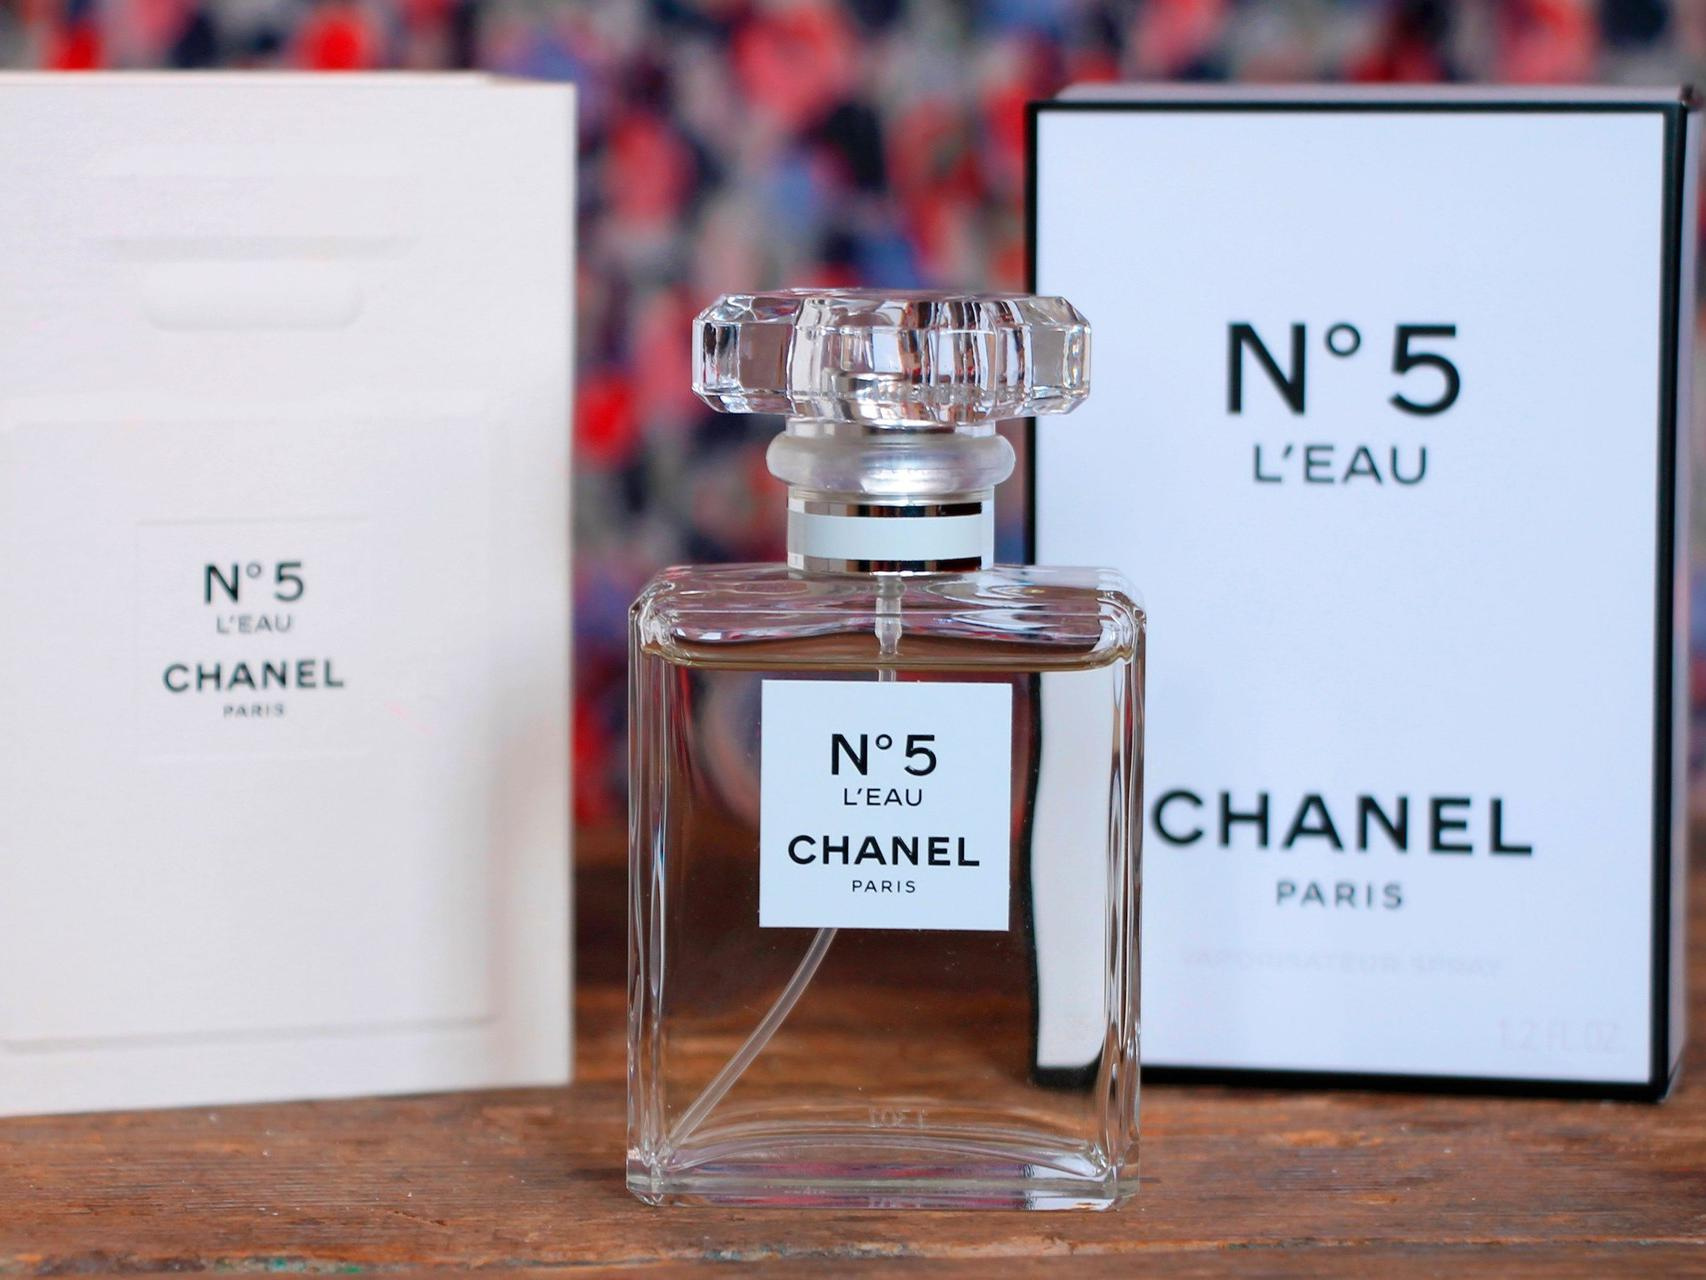 Chanel <nobr class="_">№ 5</nobr> стал визитной карточкой бренда: его распыляли в бутиках и перед показами